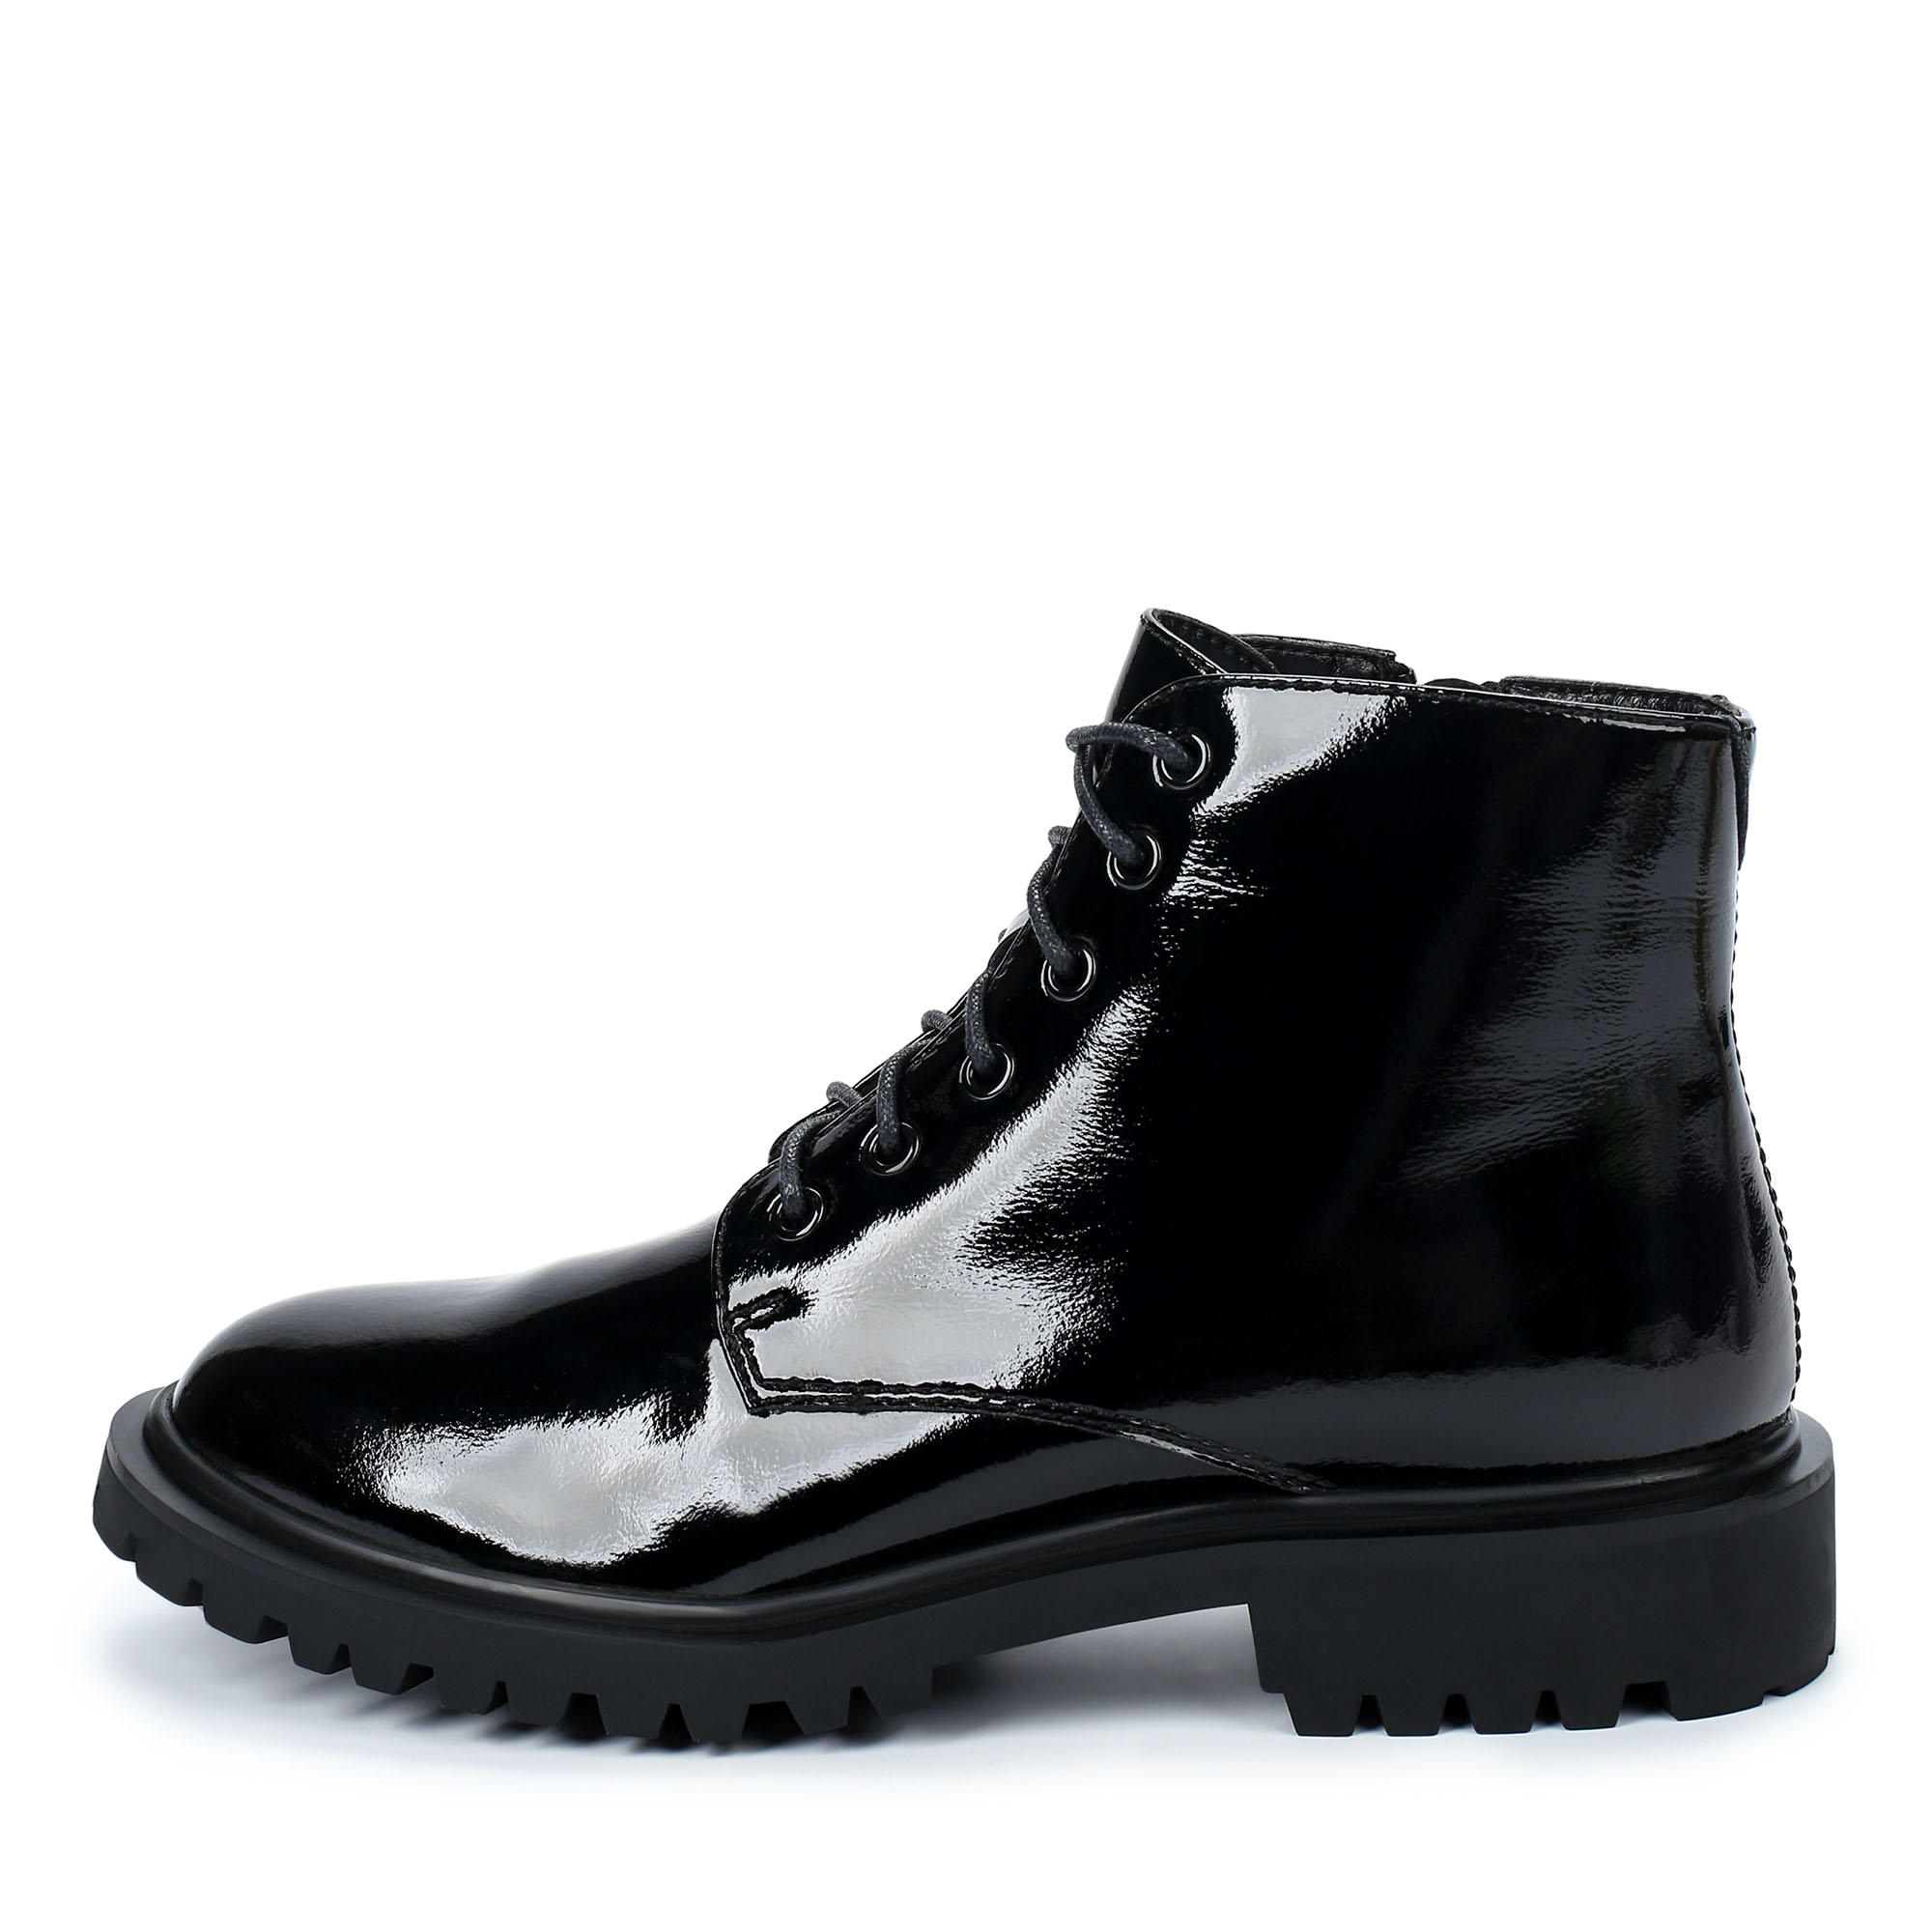 Ботинки Thomas Munz 021-004A-10702, цвет черный, размер 37